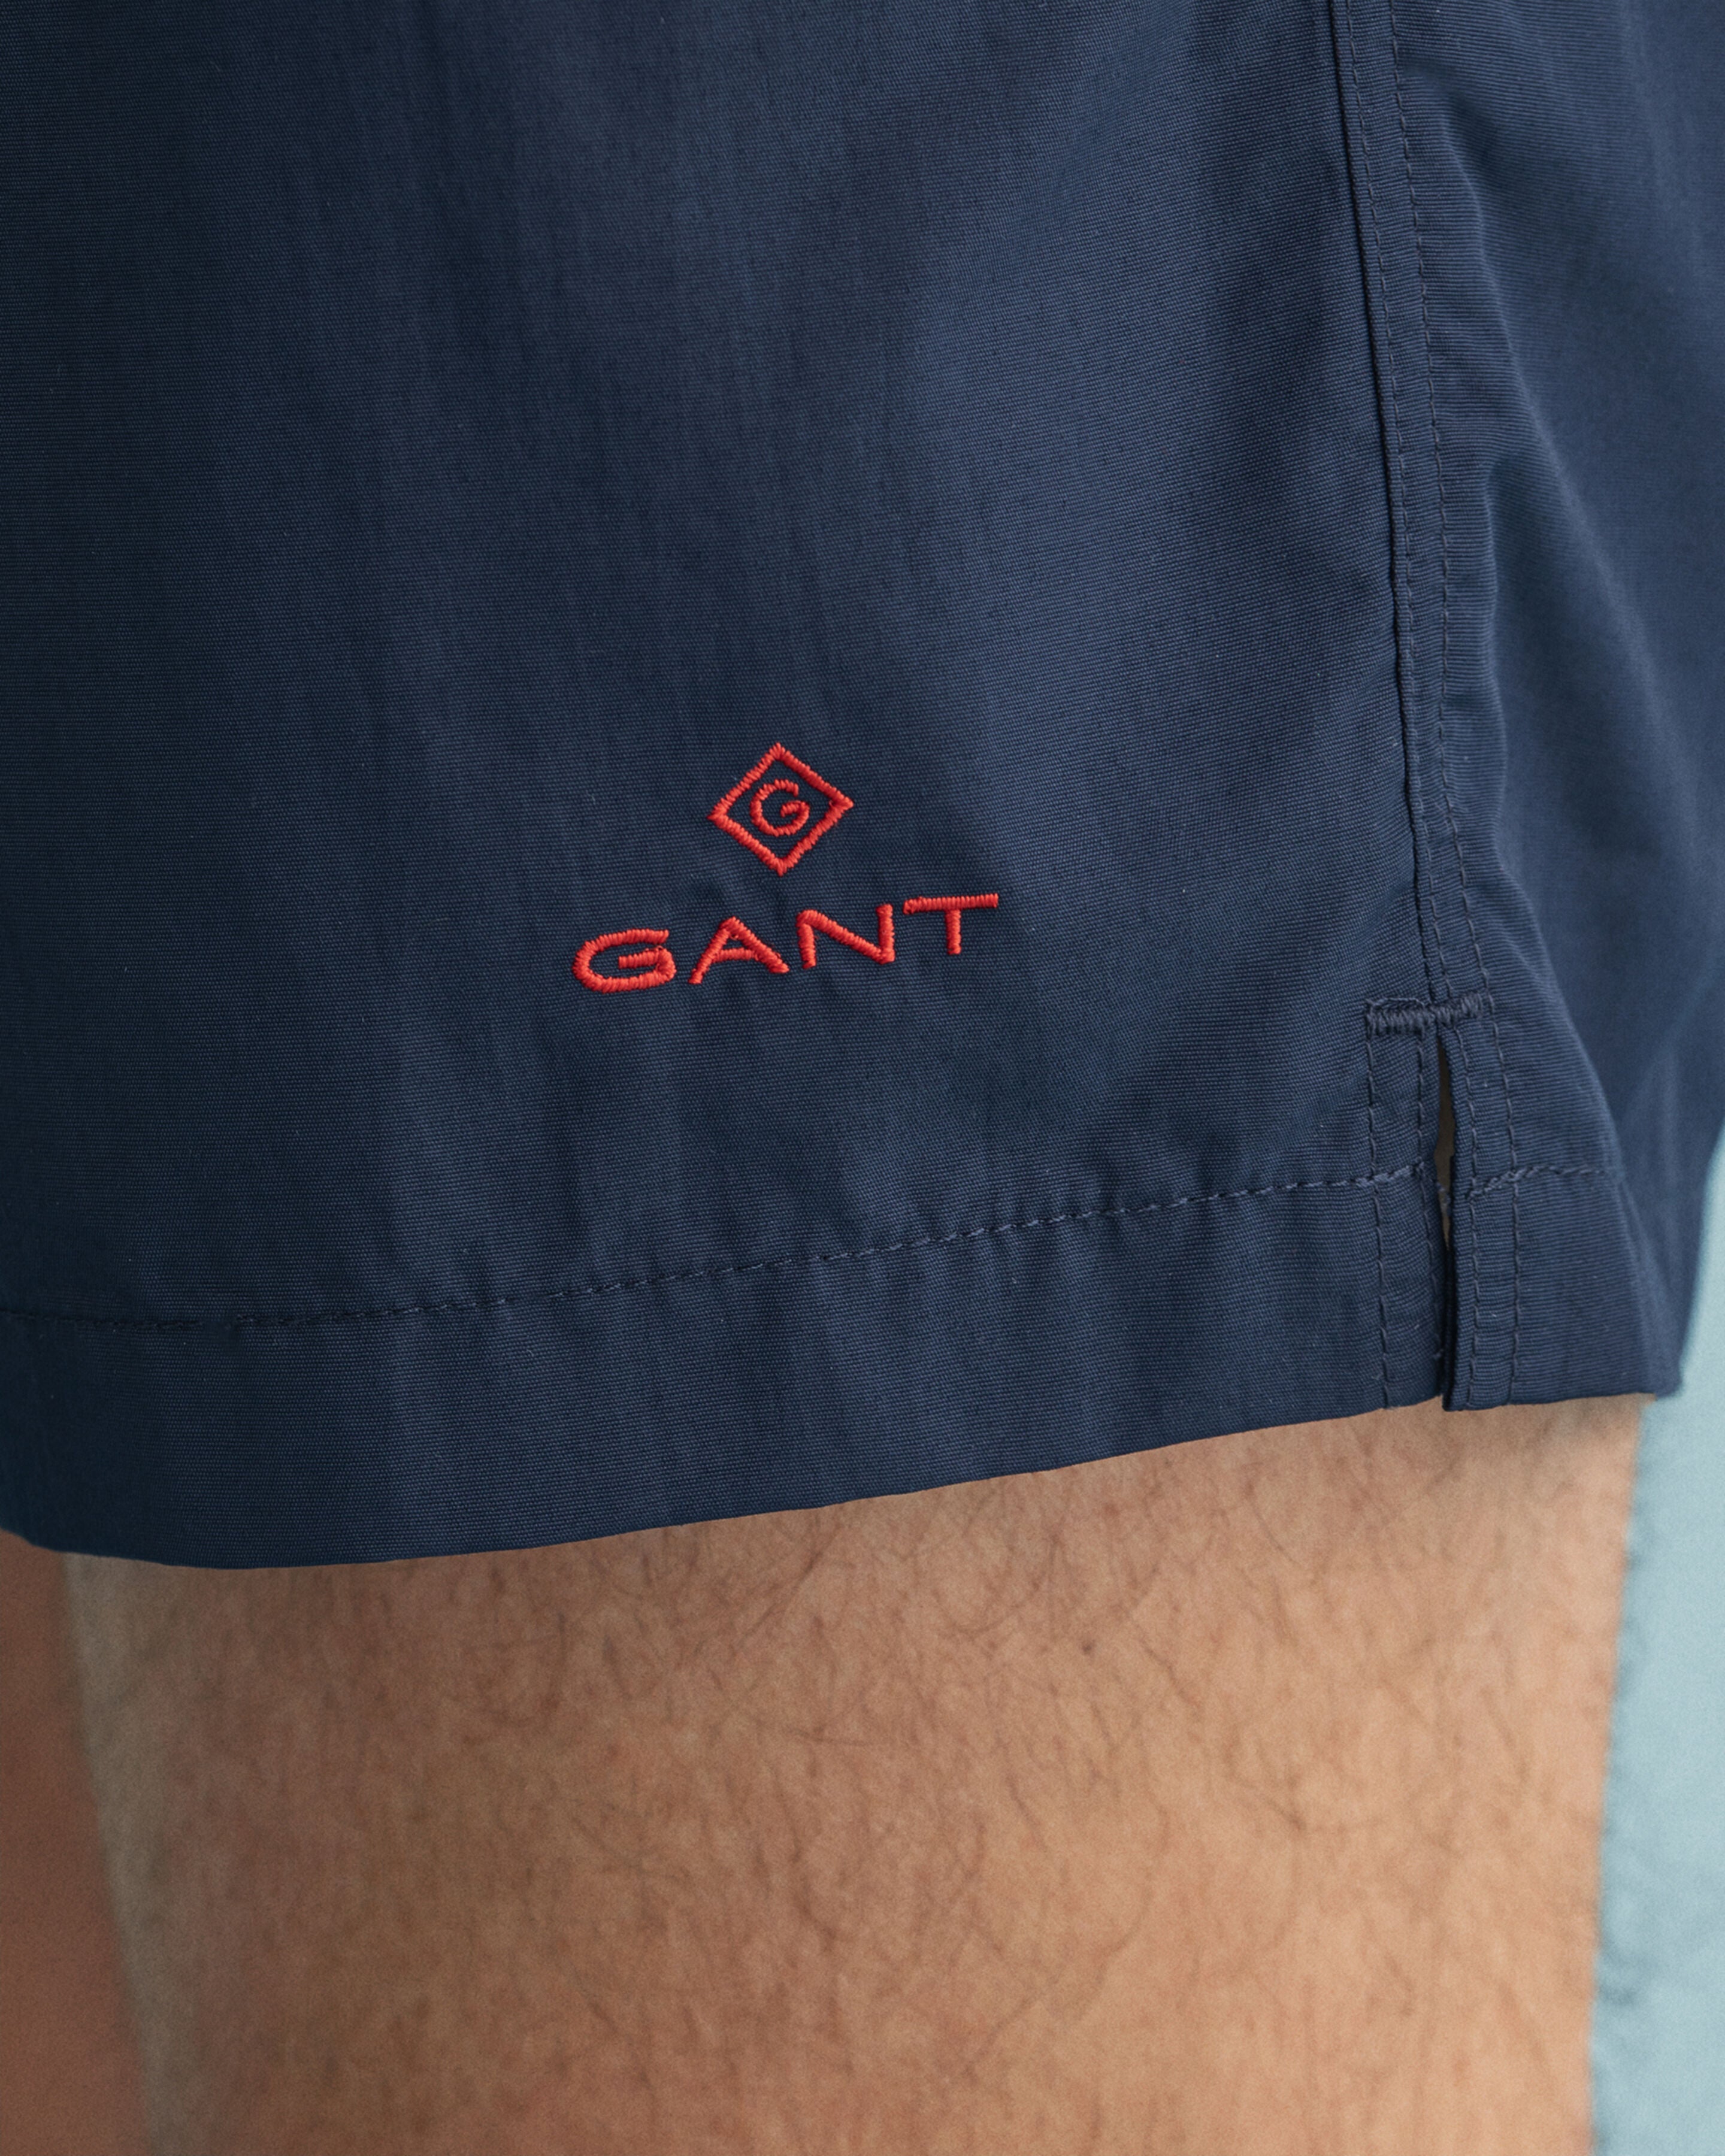 GANT - Classic Fit Swim Shorts in Marine 922016001 410